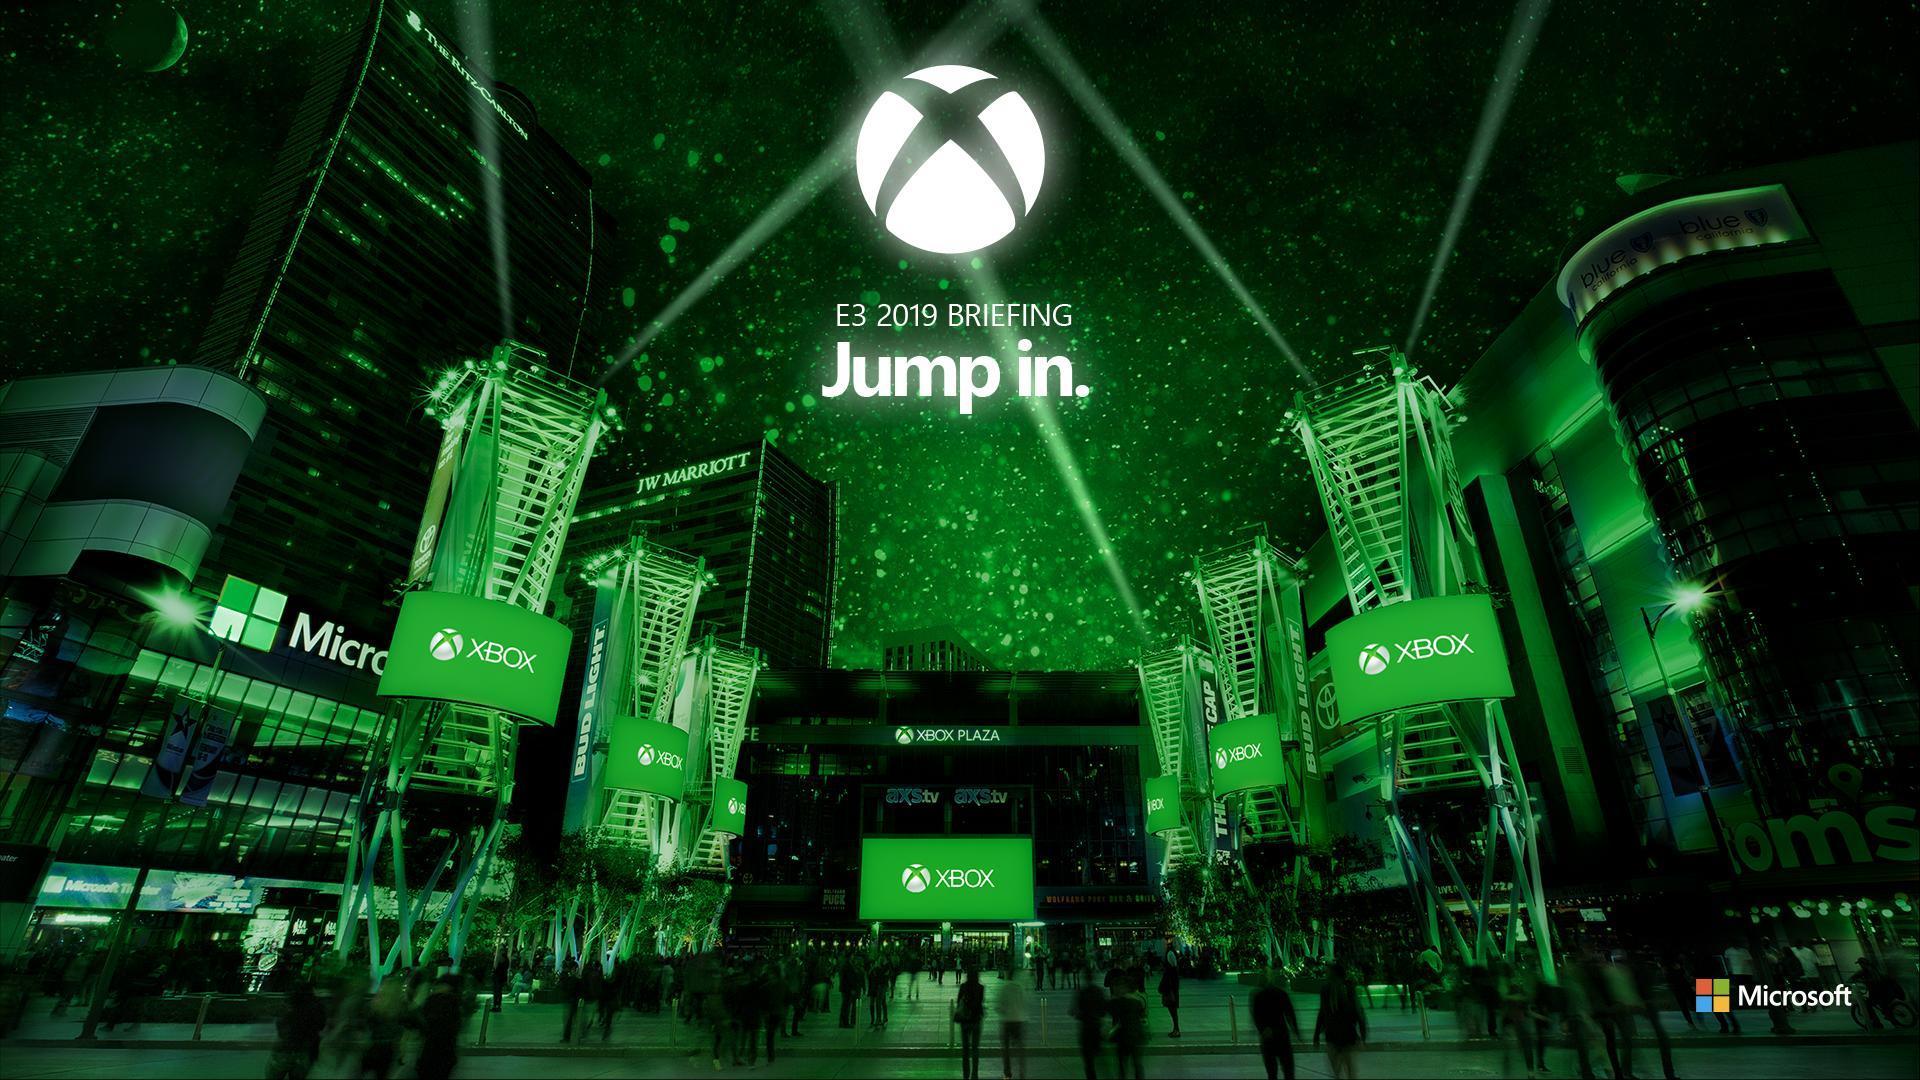 [FINALIZADO] La conferencia de Microsoft en la E3 2019, completa